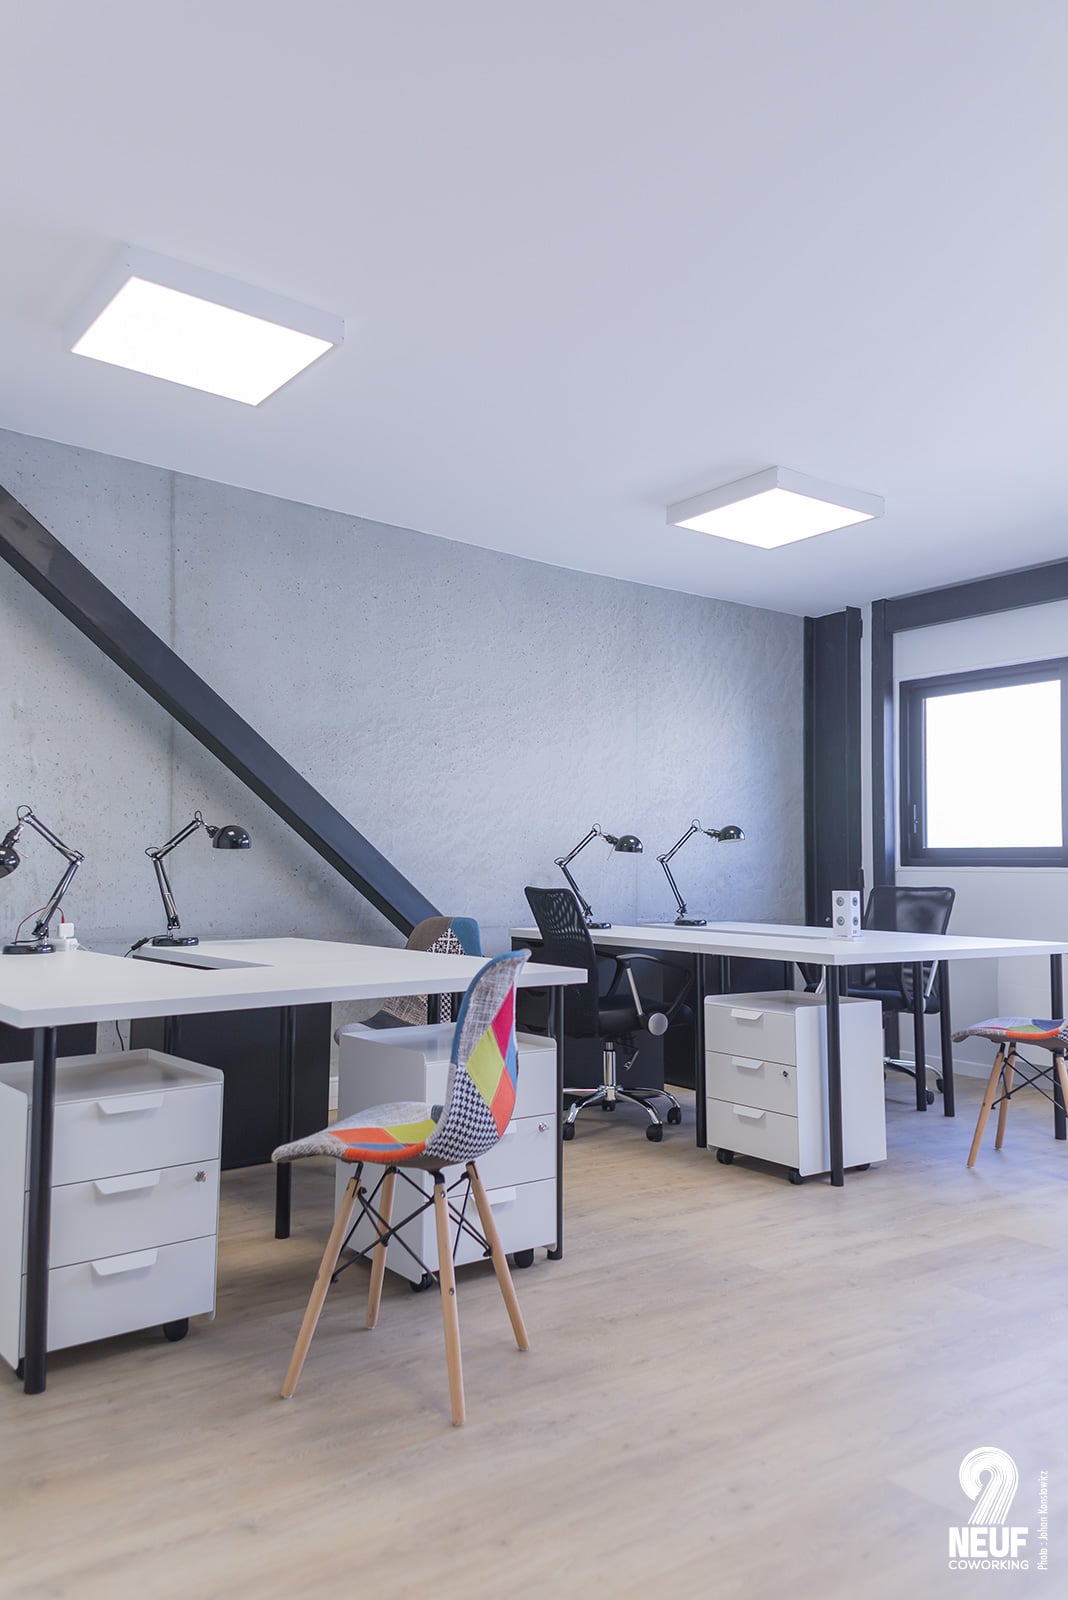 Coworking La Rochelle : Des espaces de travail adaptés aux indépendants comme aux salariés en télétravail.